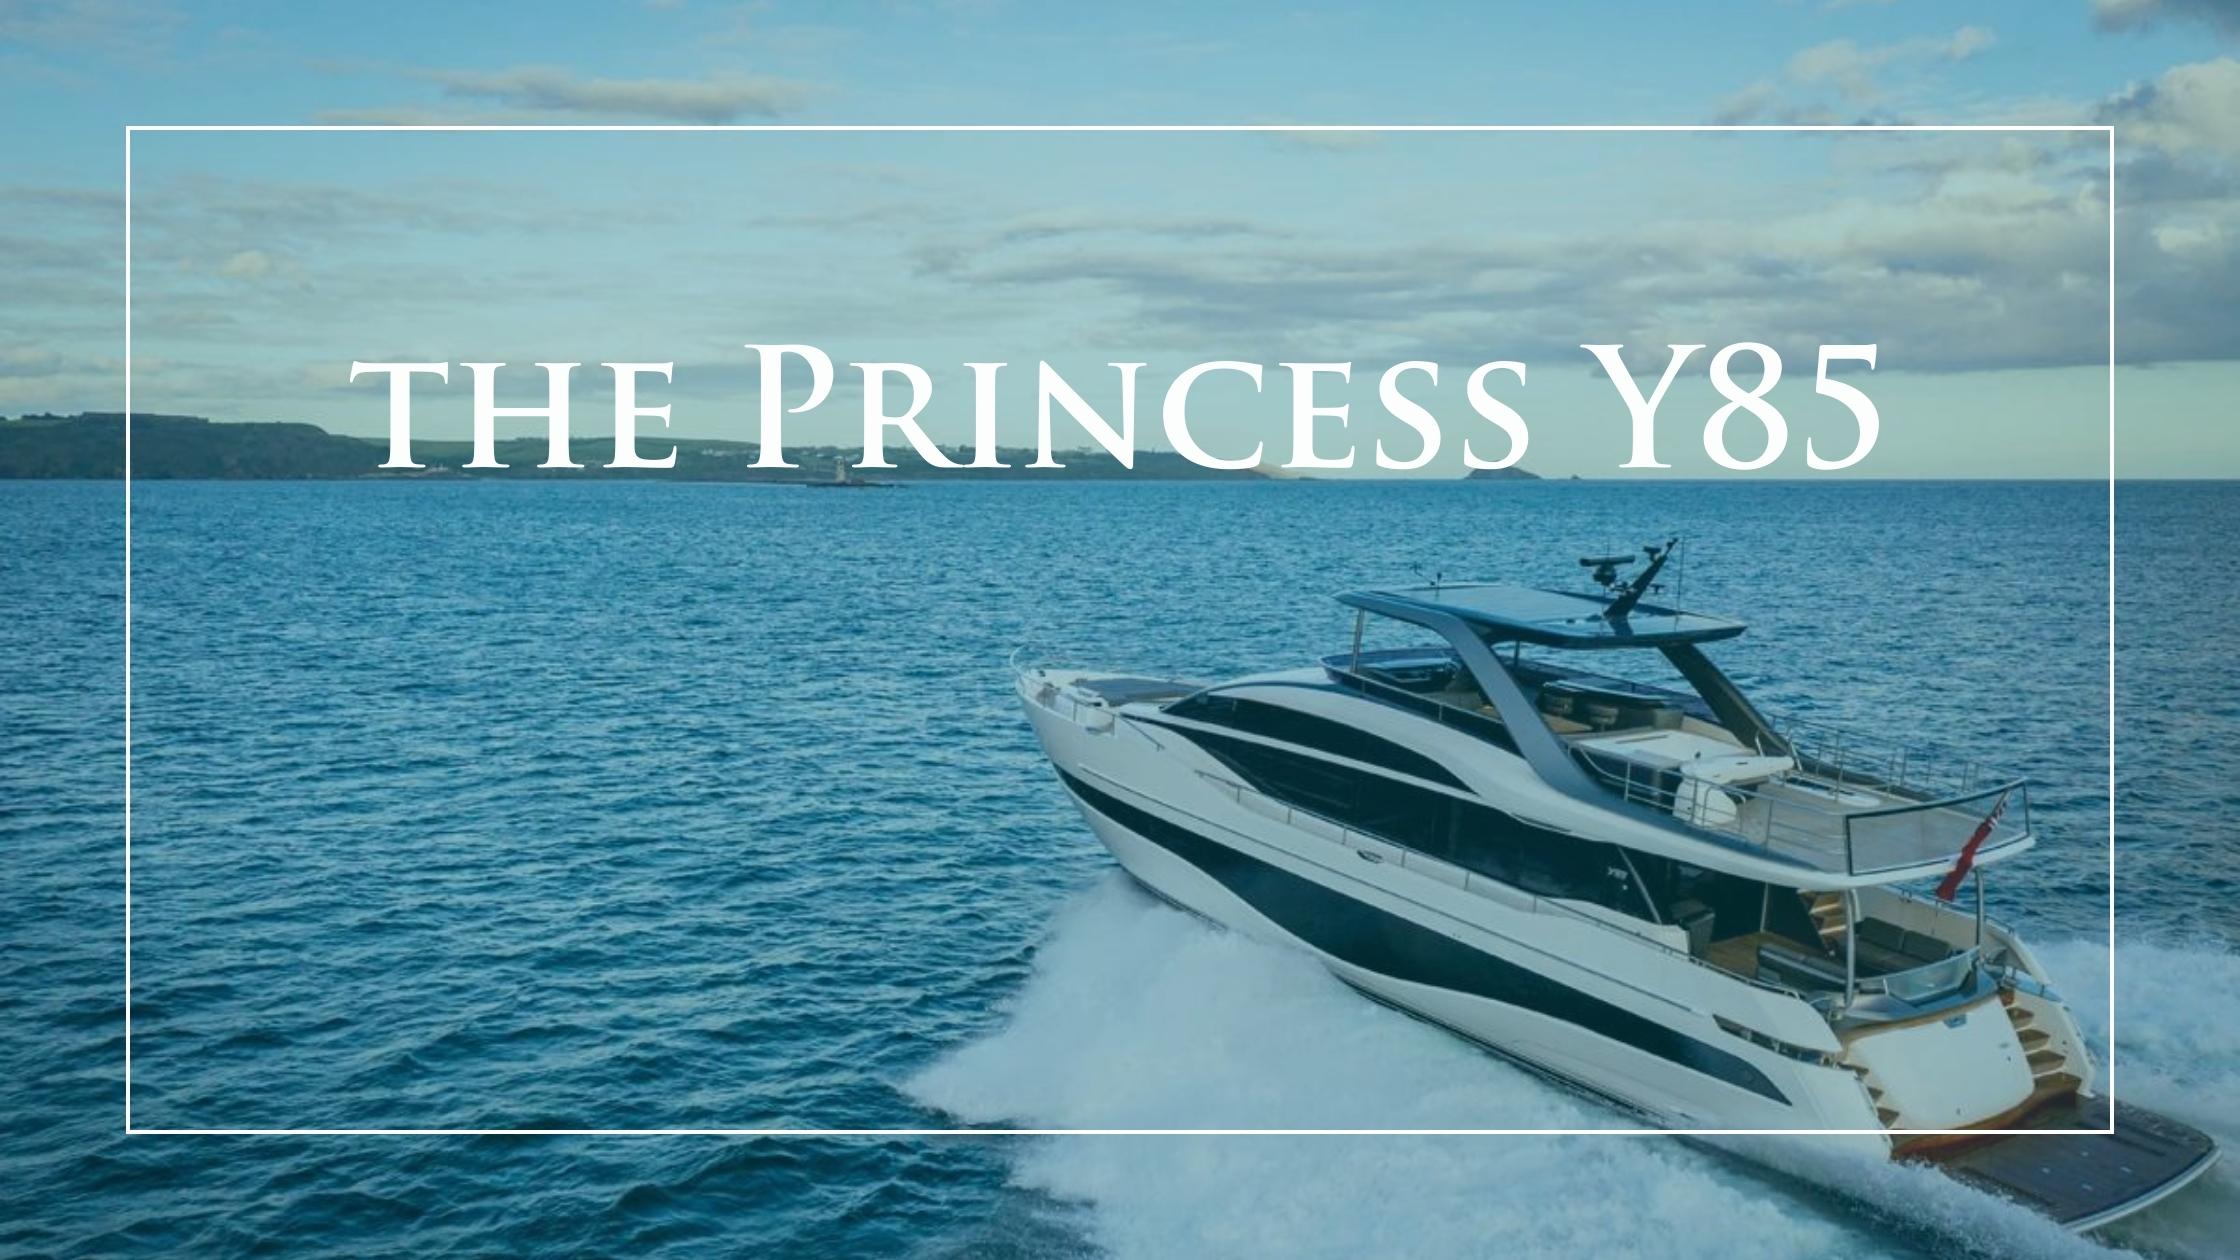 Princess Y85 — HMY Boat Report